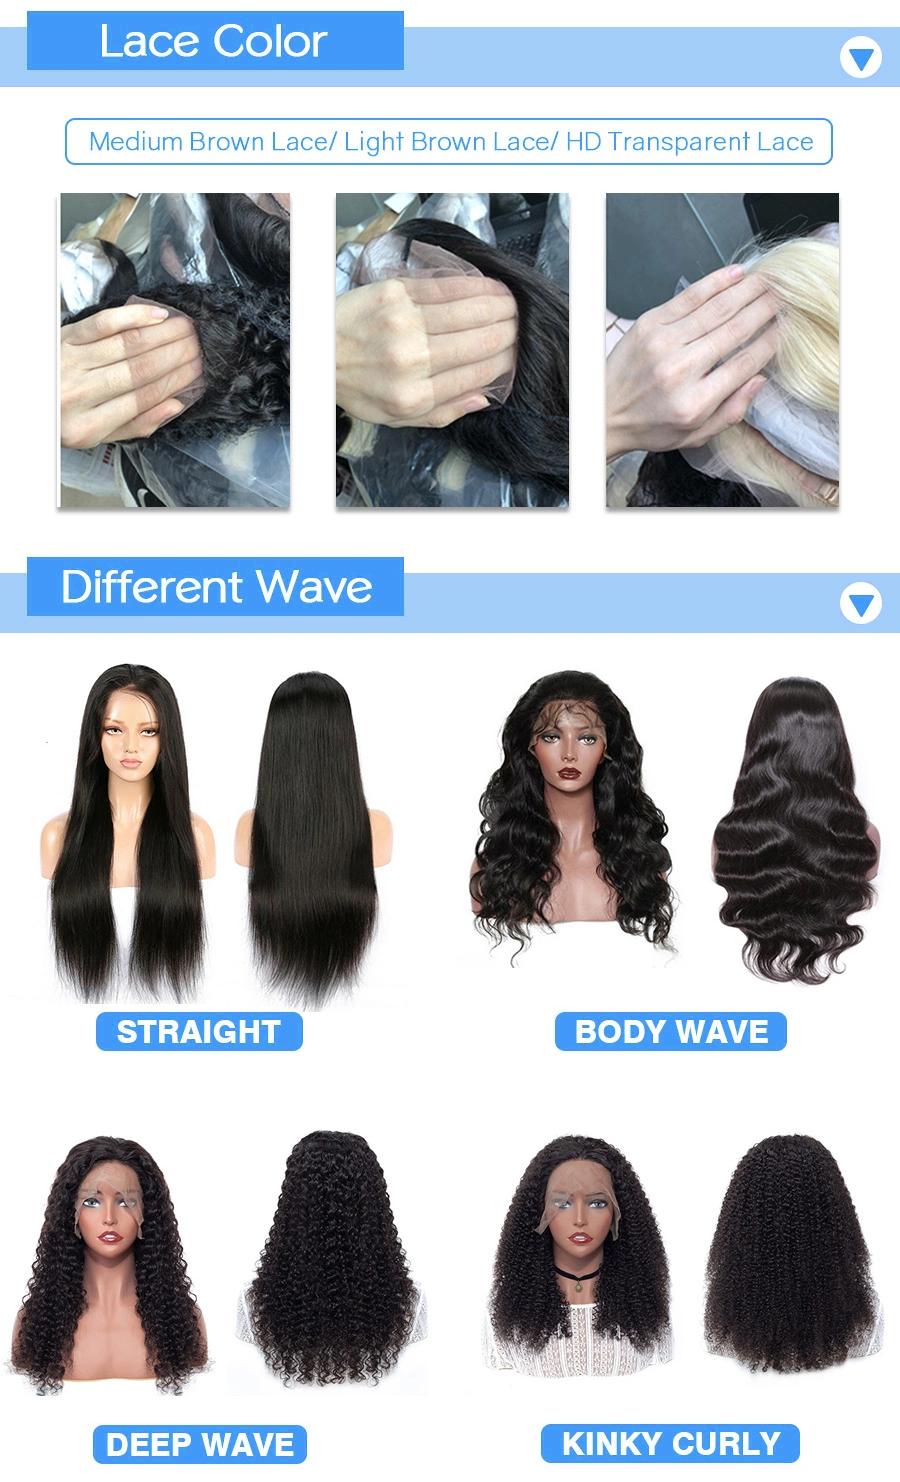 13X6 Lace Front Wig Cheap Brazilian Human Hair Wig for Black Women 100% Human Hair Wigs